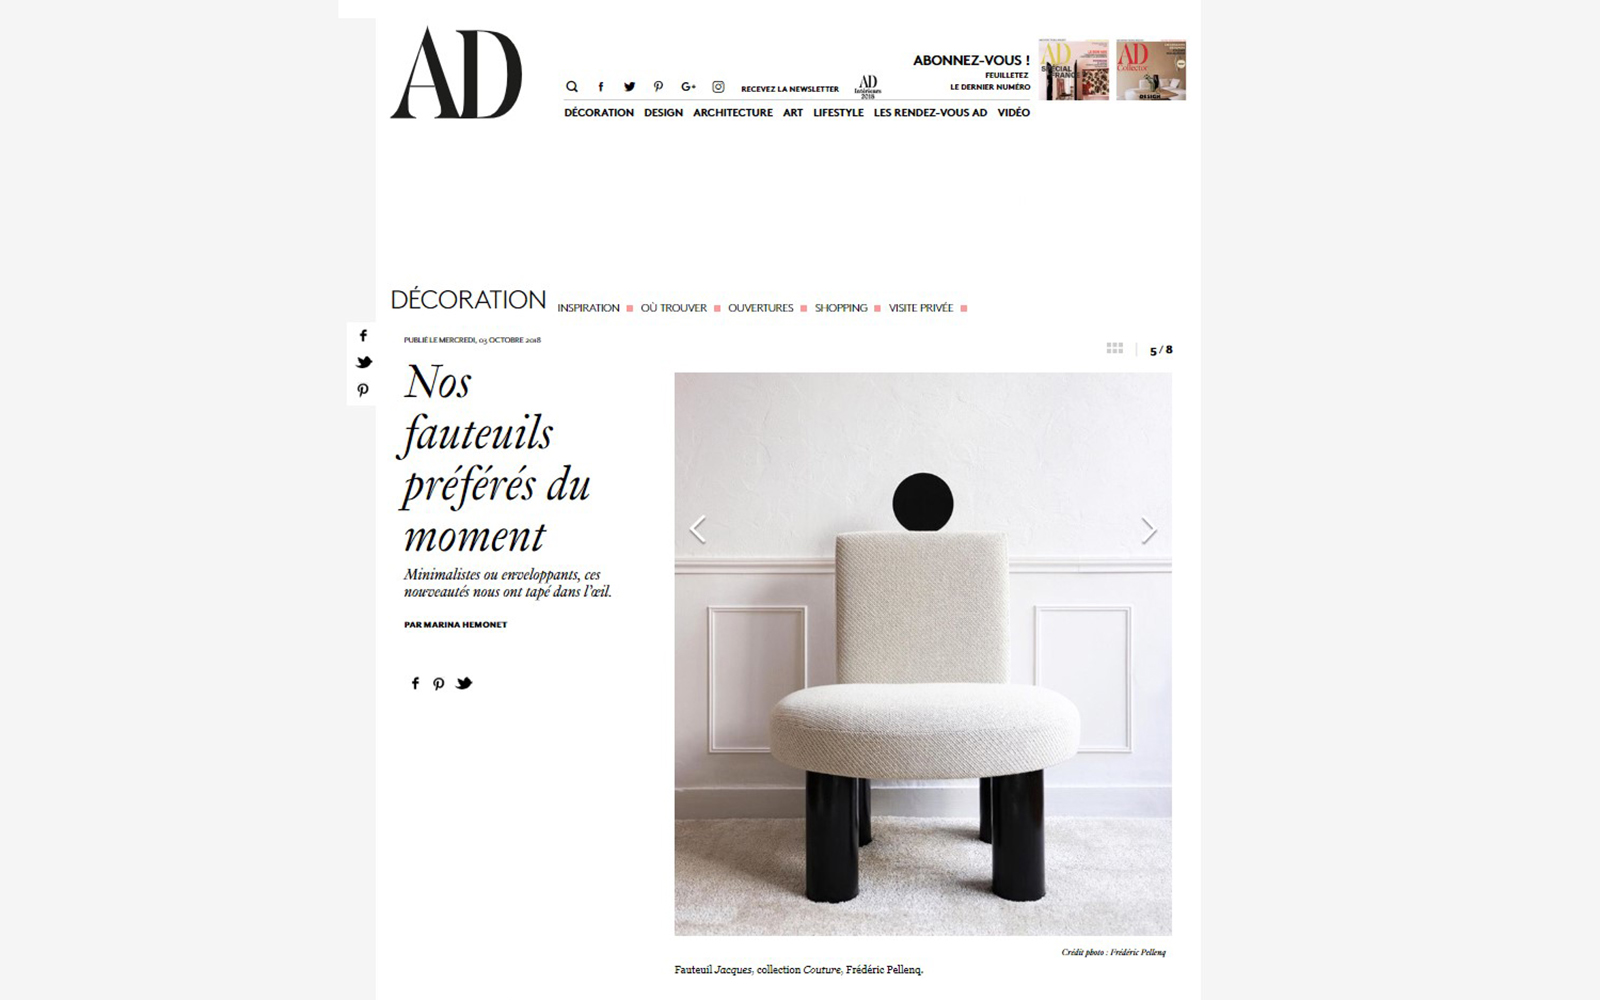 Fauteuil Couture de Frédéric Pellenq AD Magazine